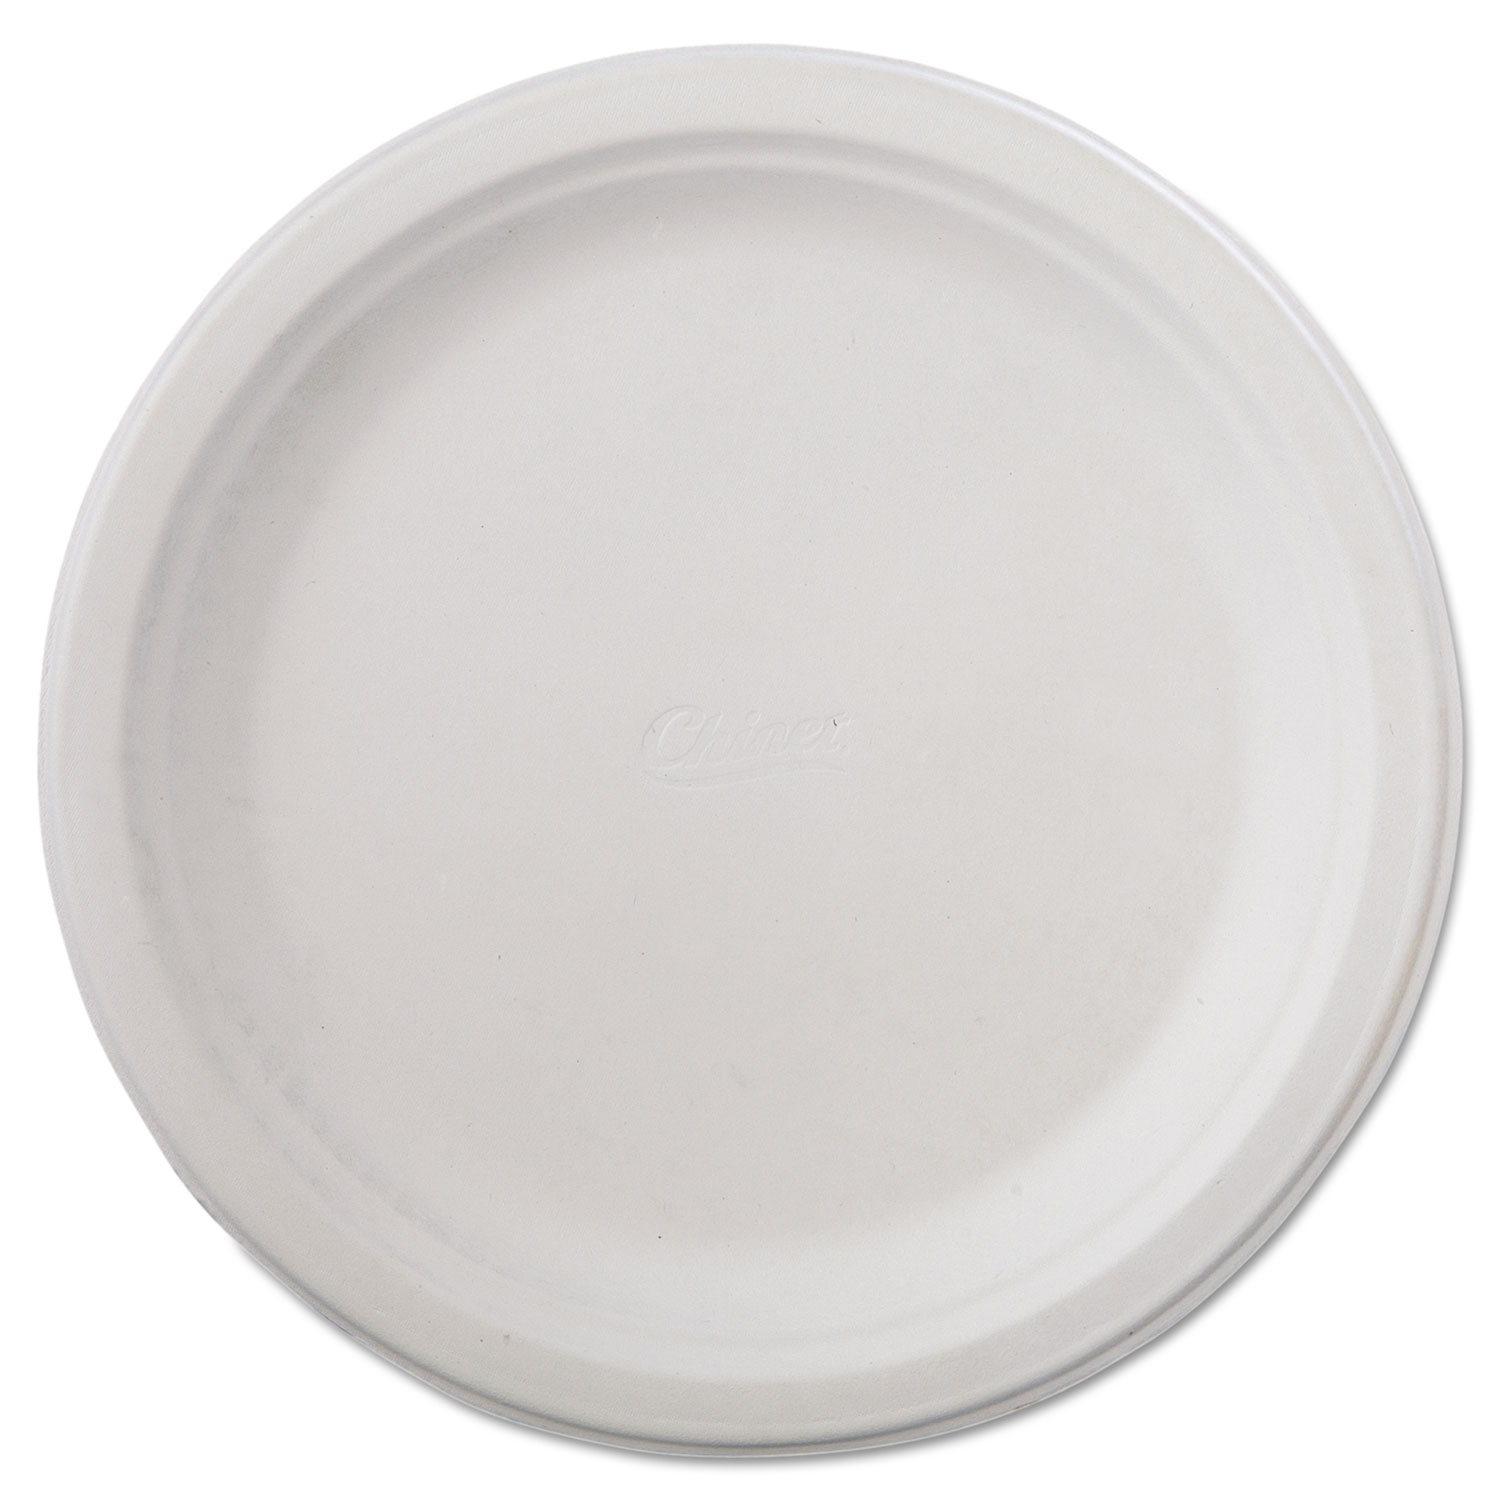  Chinet 21232 Classic Paper Dinnerware, Plate, 9 3/4 dia, White, 125/Pack, 4 Packs/Carton (HUH21232) 